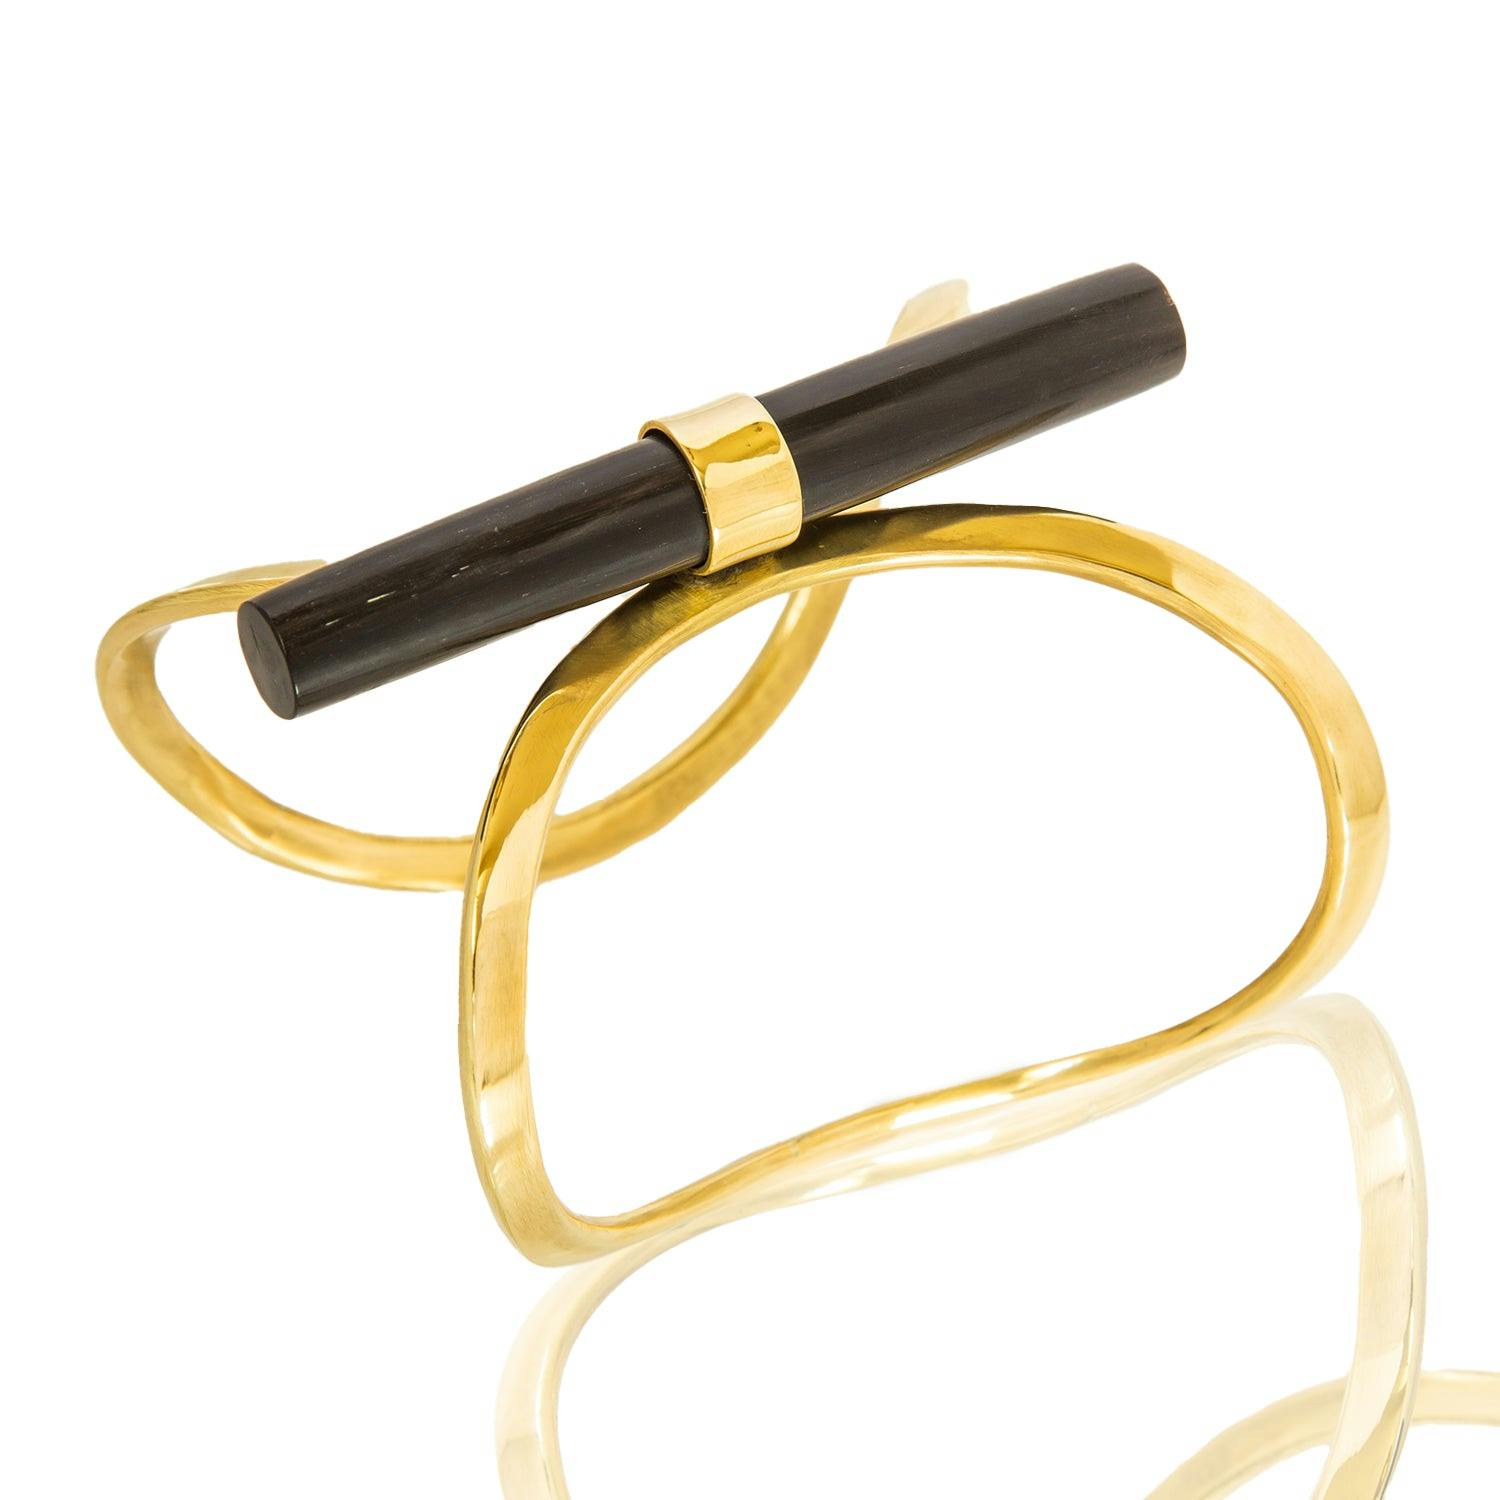 Moza Bracelet, a product by Adele Dejak